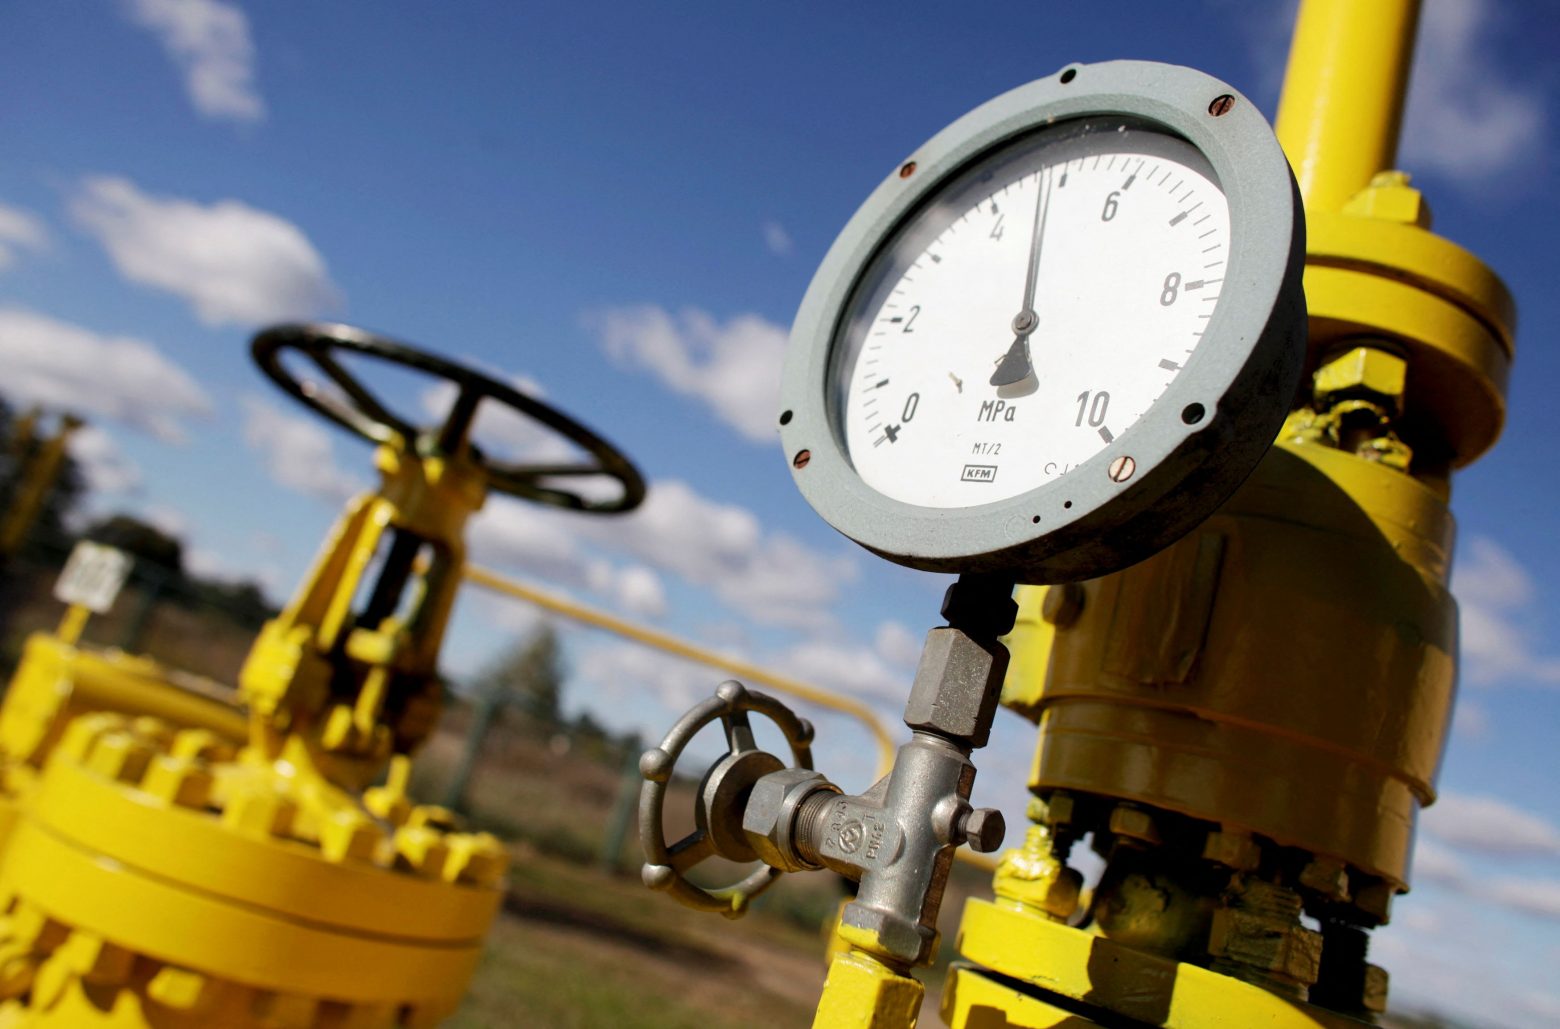 Πόλεμος στην Ουκρανία: Θα κατεβάσει η Ρωσία τον διακόπτη του φυσικού αερίου; - Πόσο πρέπει να ανησυχεί η Ευρώπη